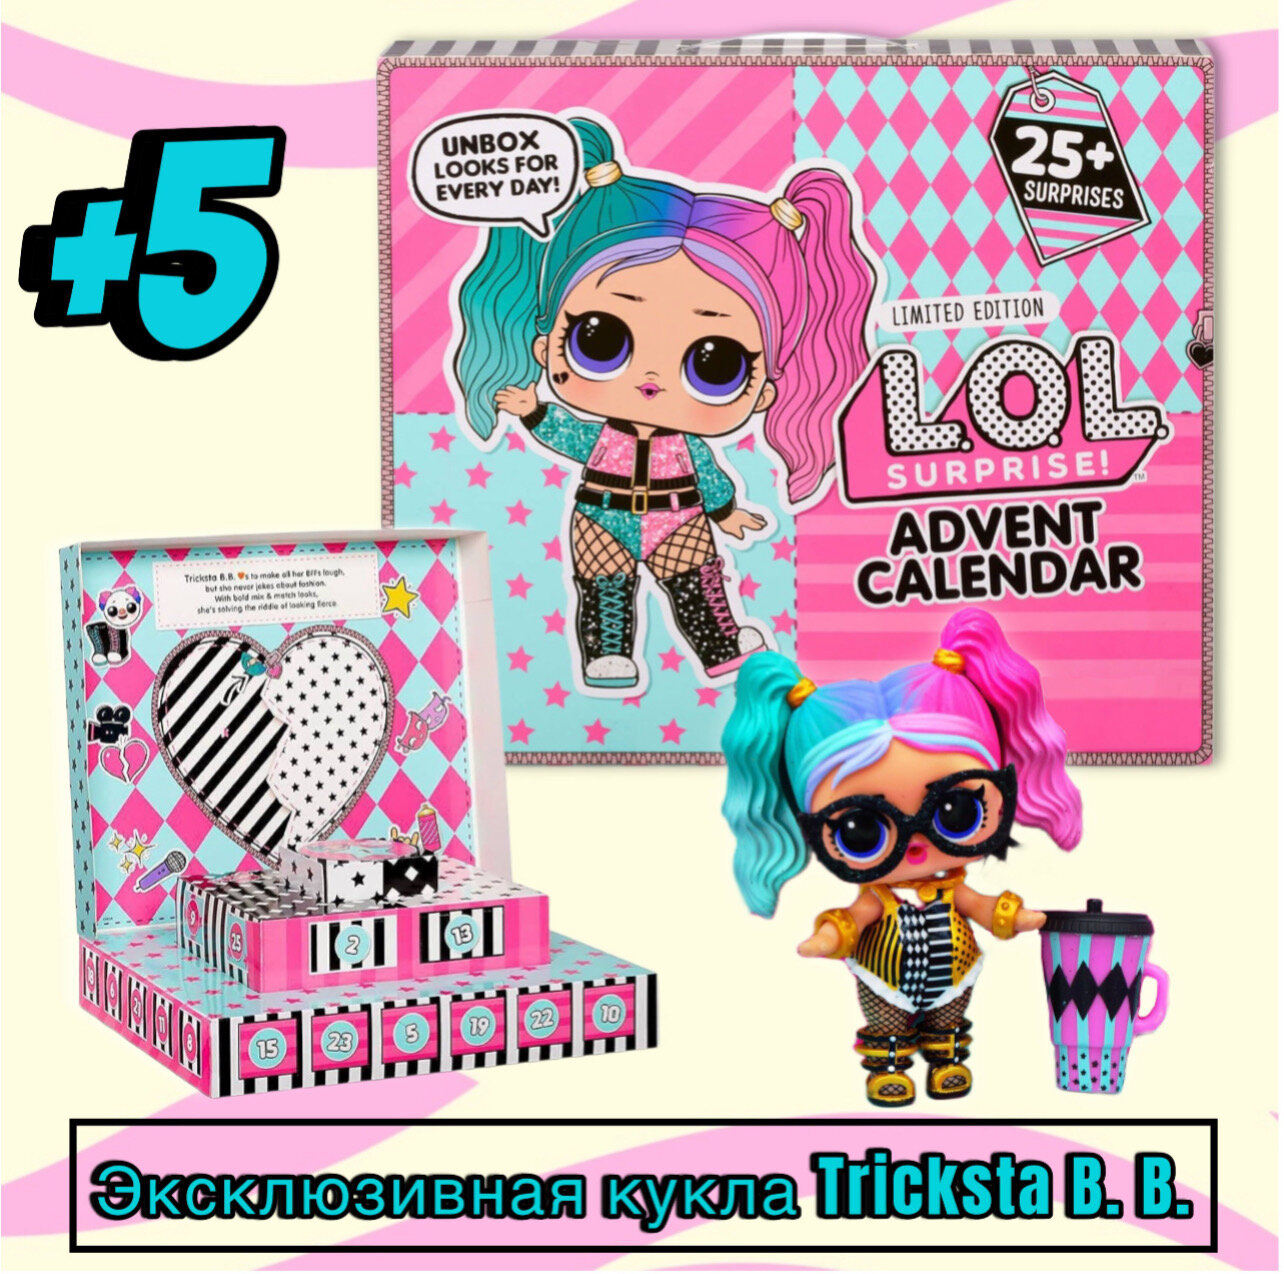 LOL Advent. Адвент Календарь с куклой Лол. 25 сюрпризов. Набор Модный образ 2020. Advent Calendar L.O.L. Surprise #OOTD 2020.